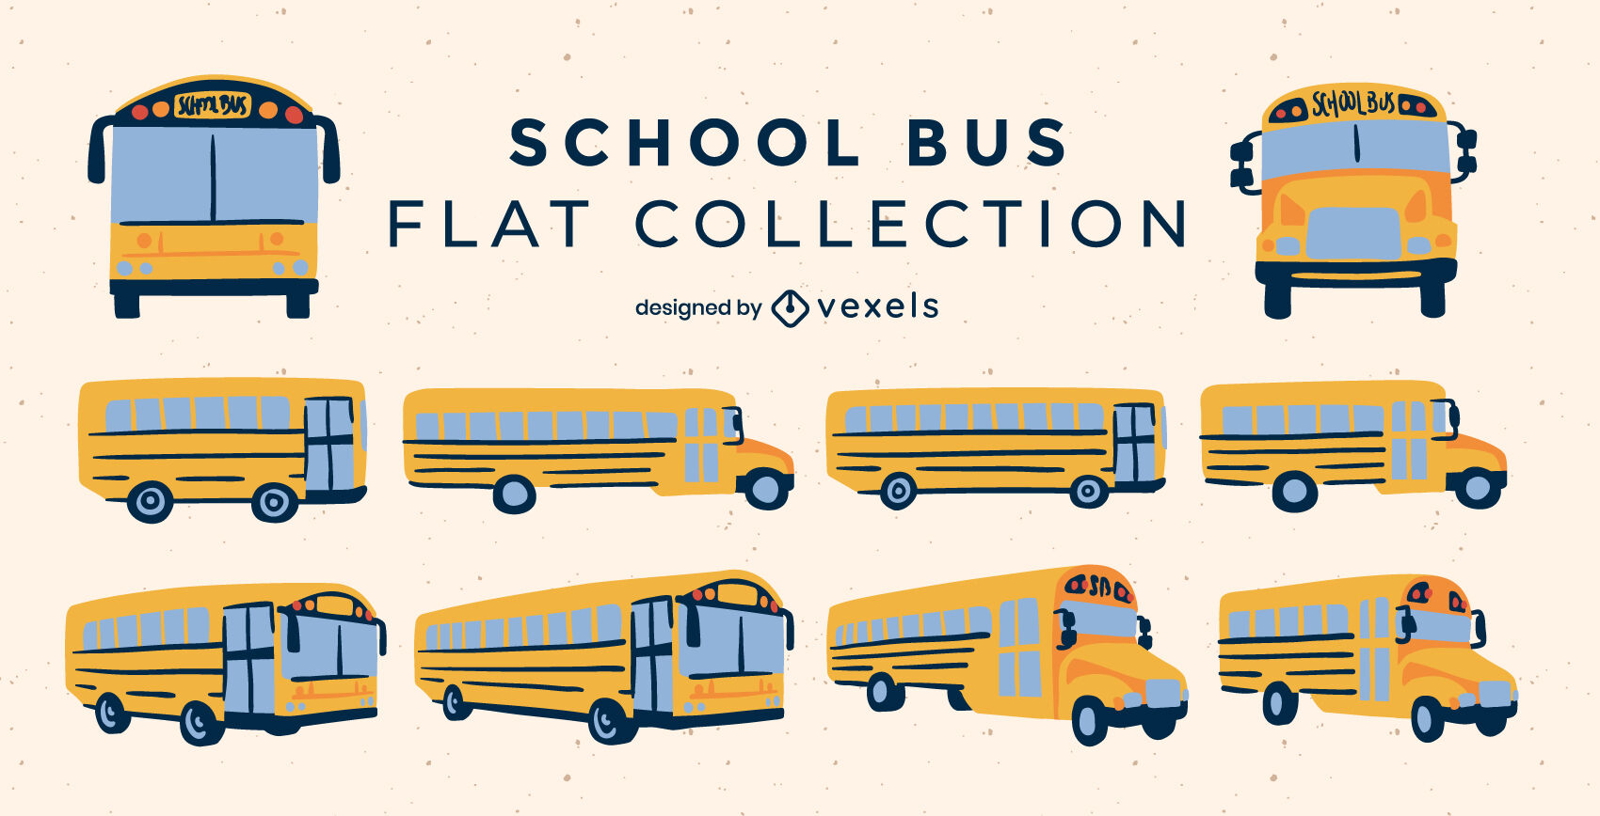 Conjunto de ônibus escolares planos